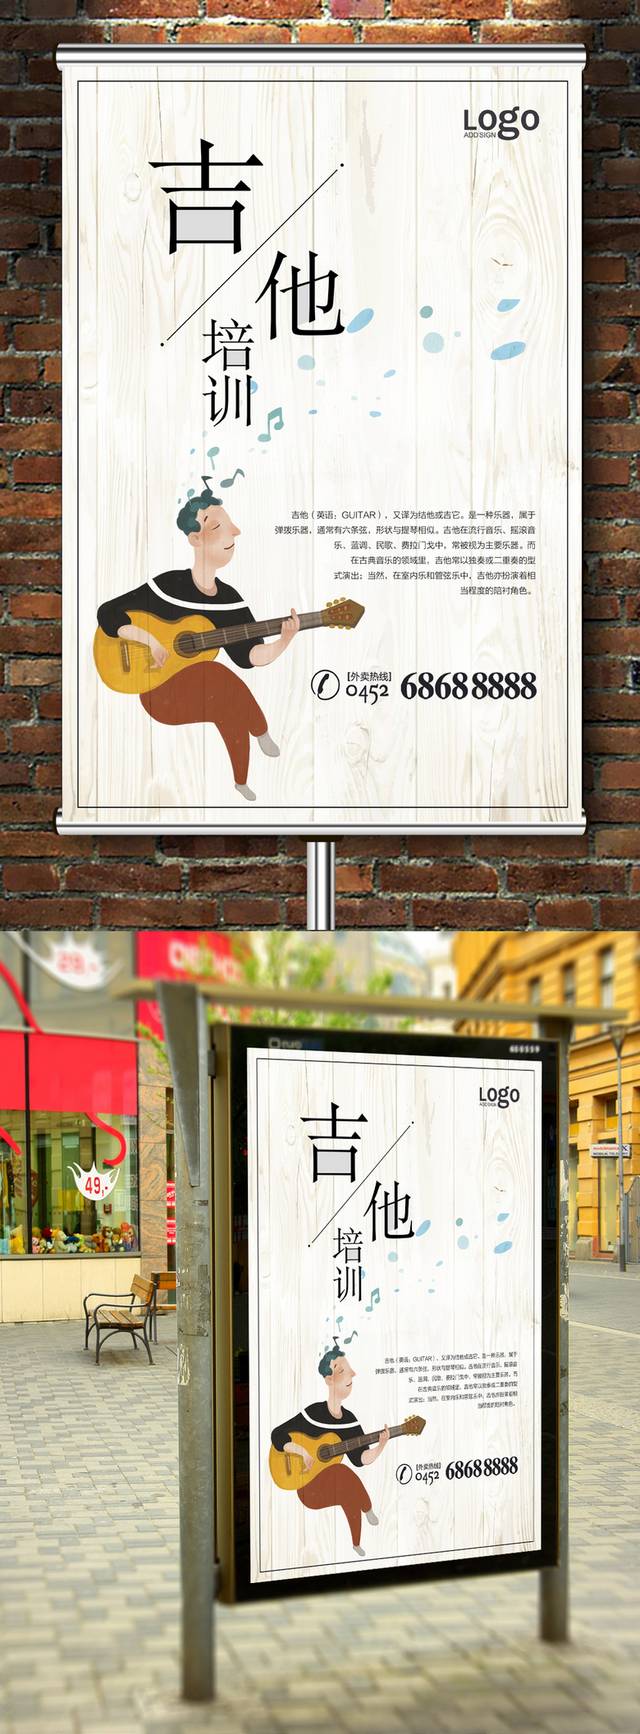 吉他培训班招生宣传海报